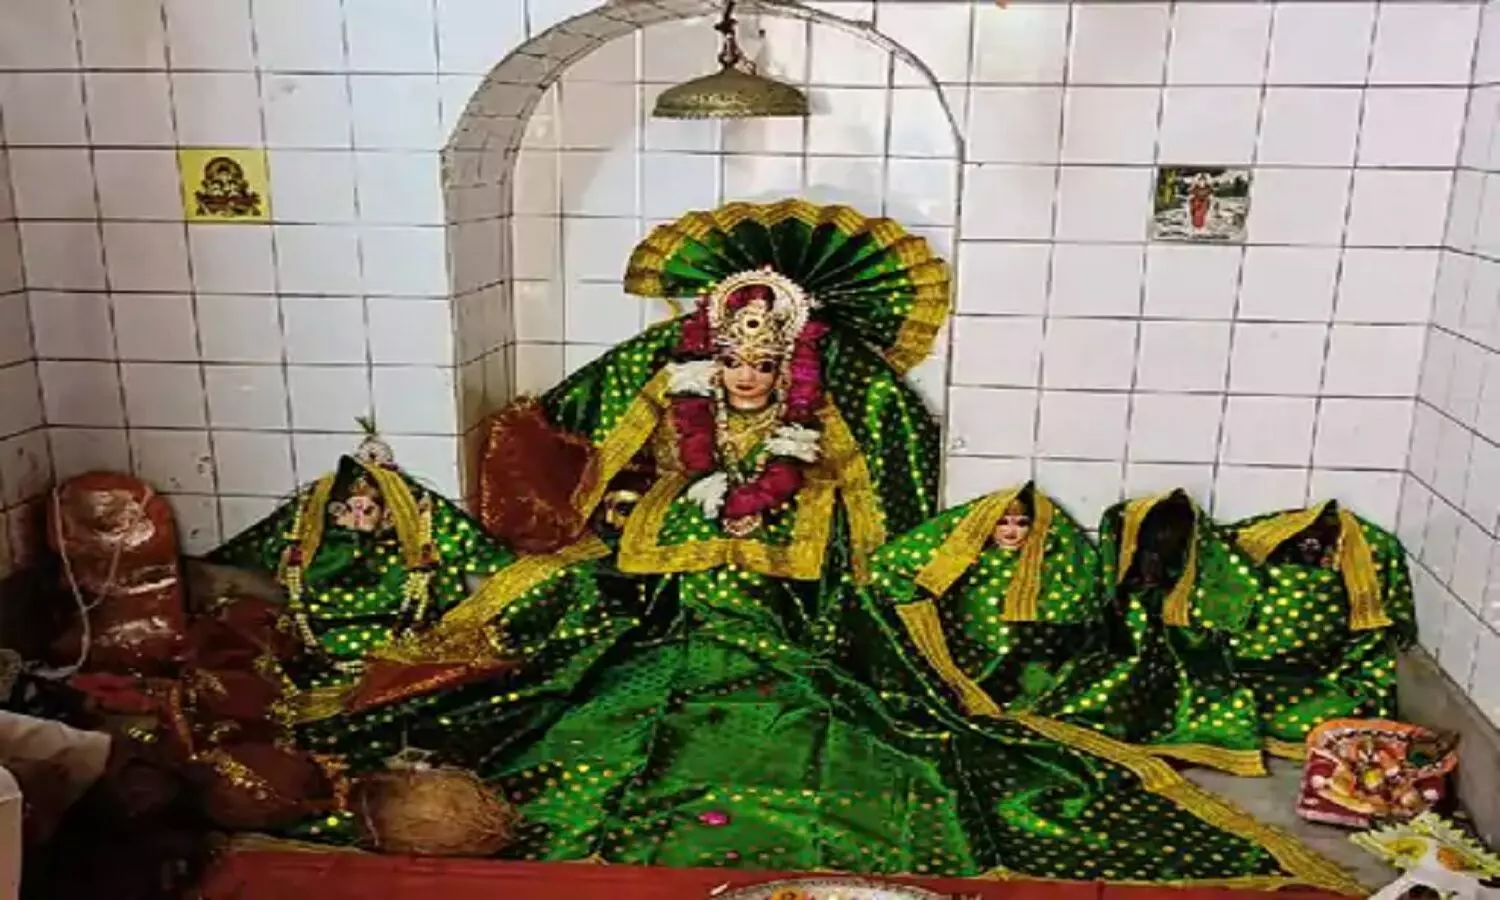 Nauchandi Temple : रावण की पत्नी रानी मंदोदरी ने भारत के इस राज्य में बनवाया था मंदिर, मौजूद है चंडी मां की प्रतिमा